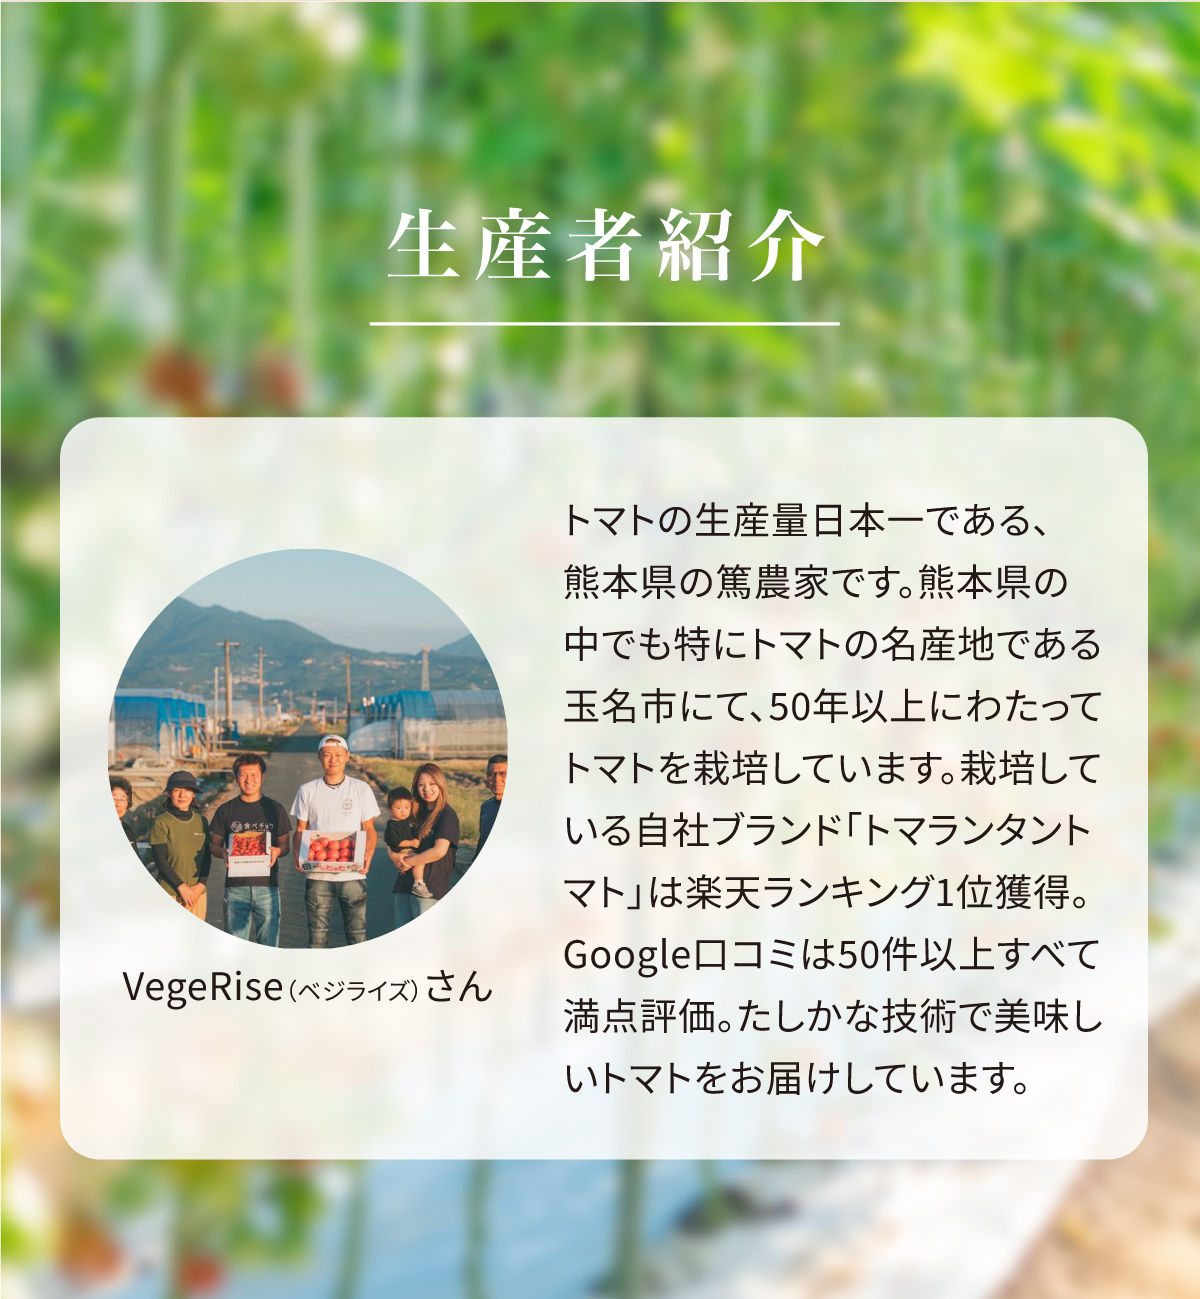 生産者紹介 VegeRise(ベジライズ)さん トマトの生産量日本一である、熊本県の篤農家です。熊本県の中でも特にトマトの名産地である玉名市にて、50年以上にわたってトマトを栽培しています。栽培している自社ブランド「トマランタントマト」は楽天ランキング1位獲得。Google口コミは50件以上すべて満点評価。たしかな技術で美味しいトマトをお届けしています。